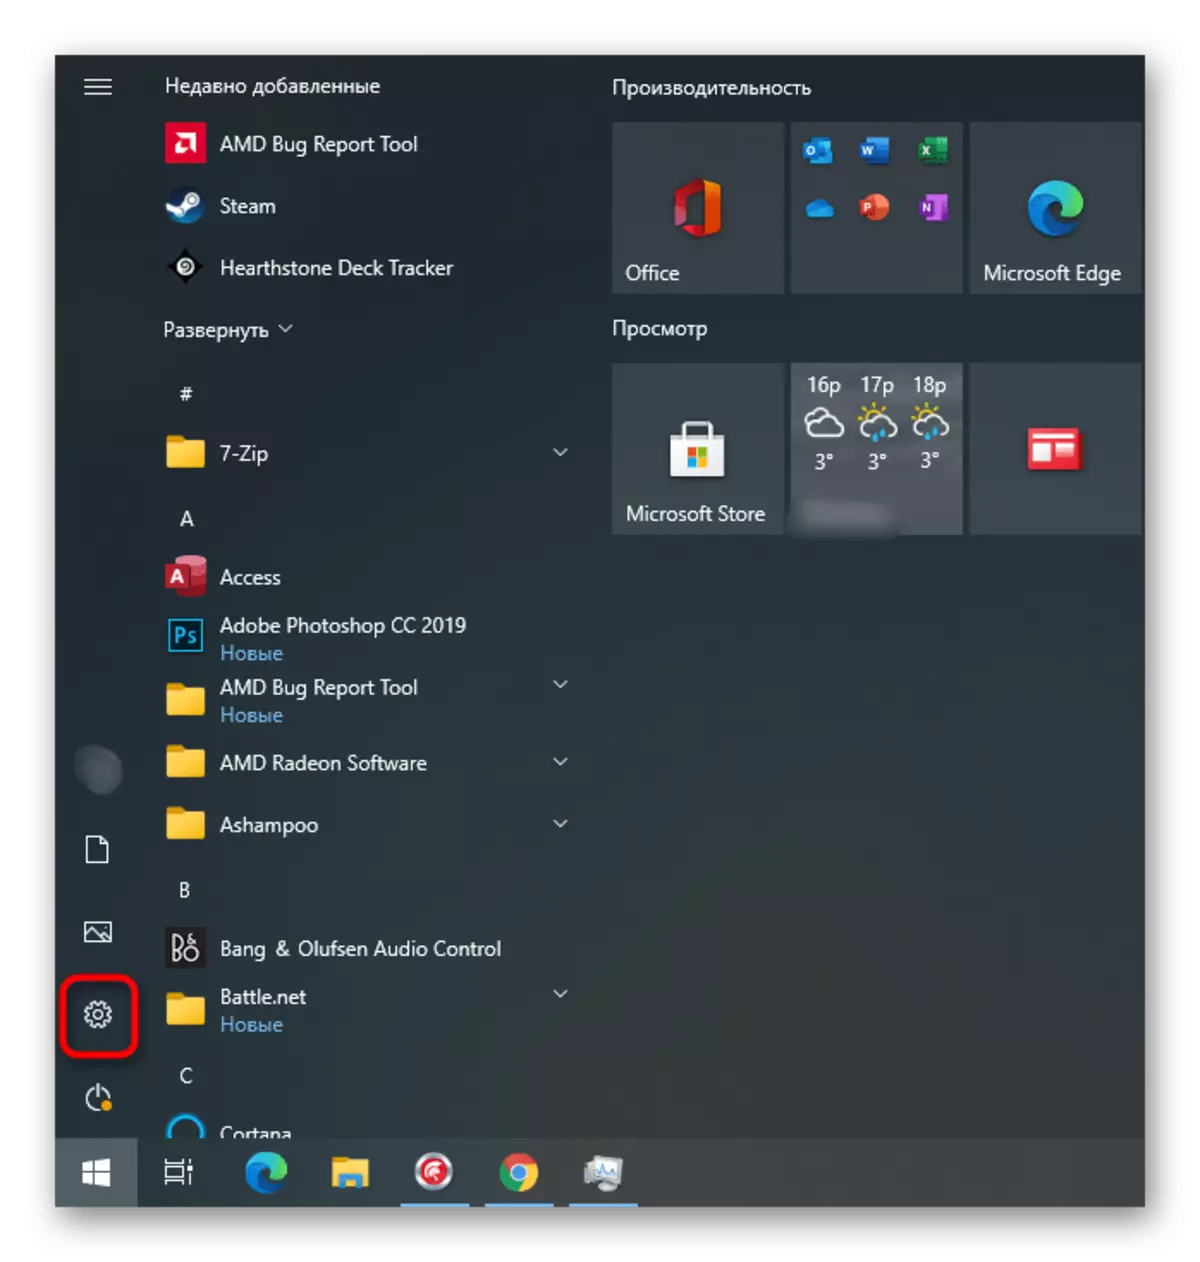 גיין צו אַפּלאַקיישאַן סעטטינגס פֿאַר קאָנטראָלירונג שאָפער דערהייַנטיקן אויף Windows 10